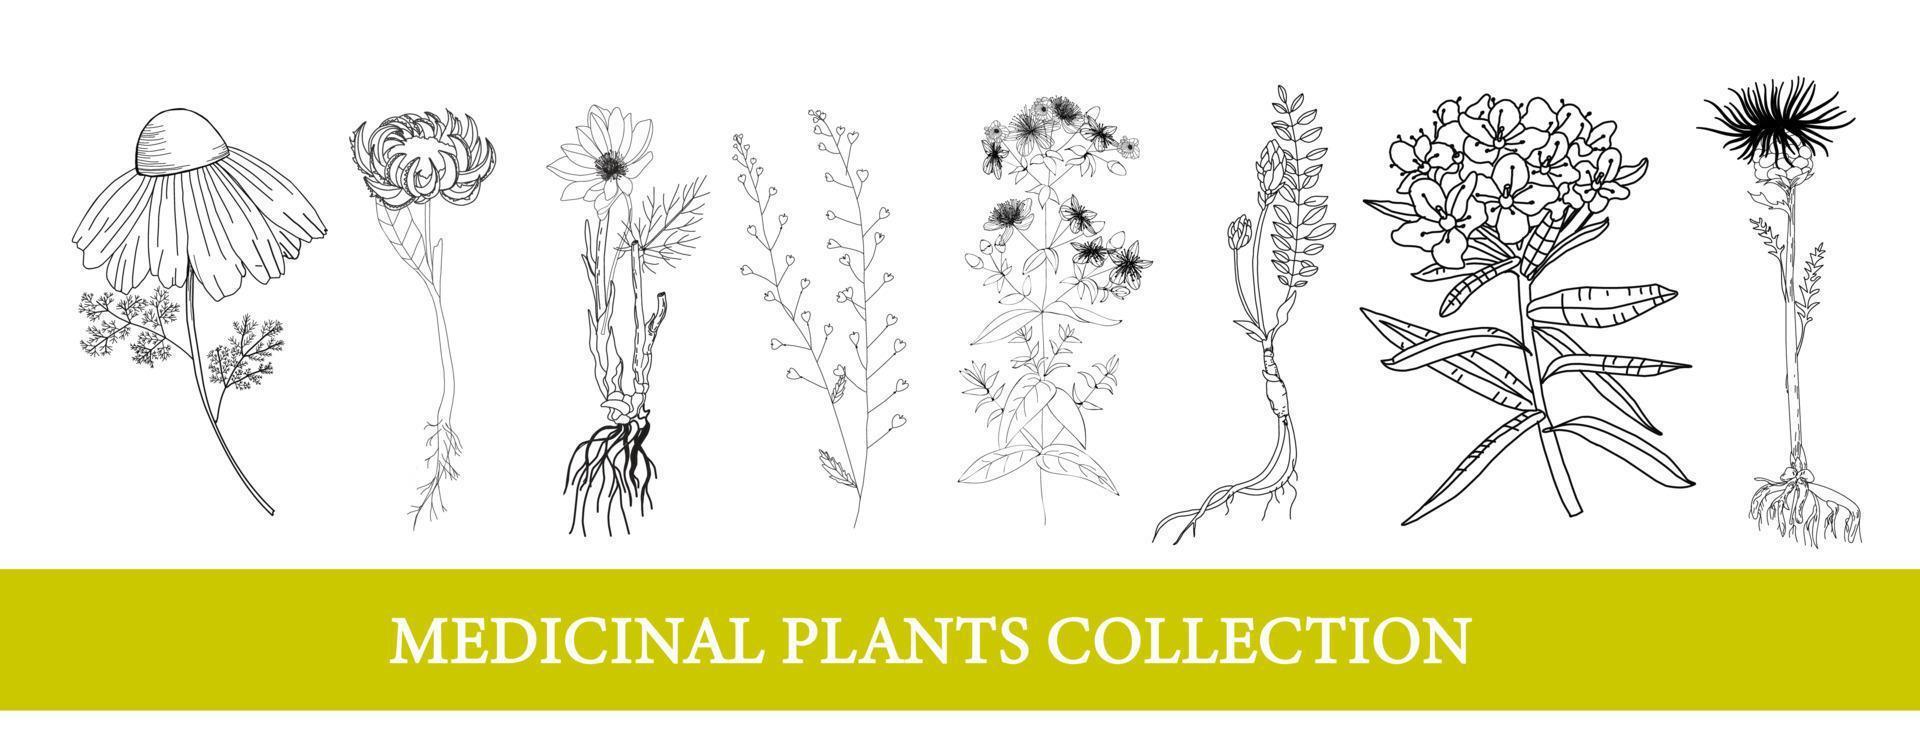 ledum, souci, leuzea, camomille. plantes médicinales fleurs sauvages illustration vectorielle illustration botanique vecteur